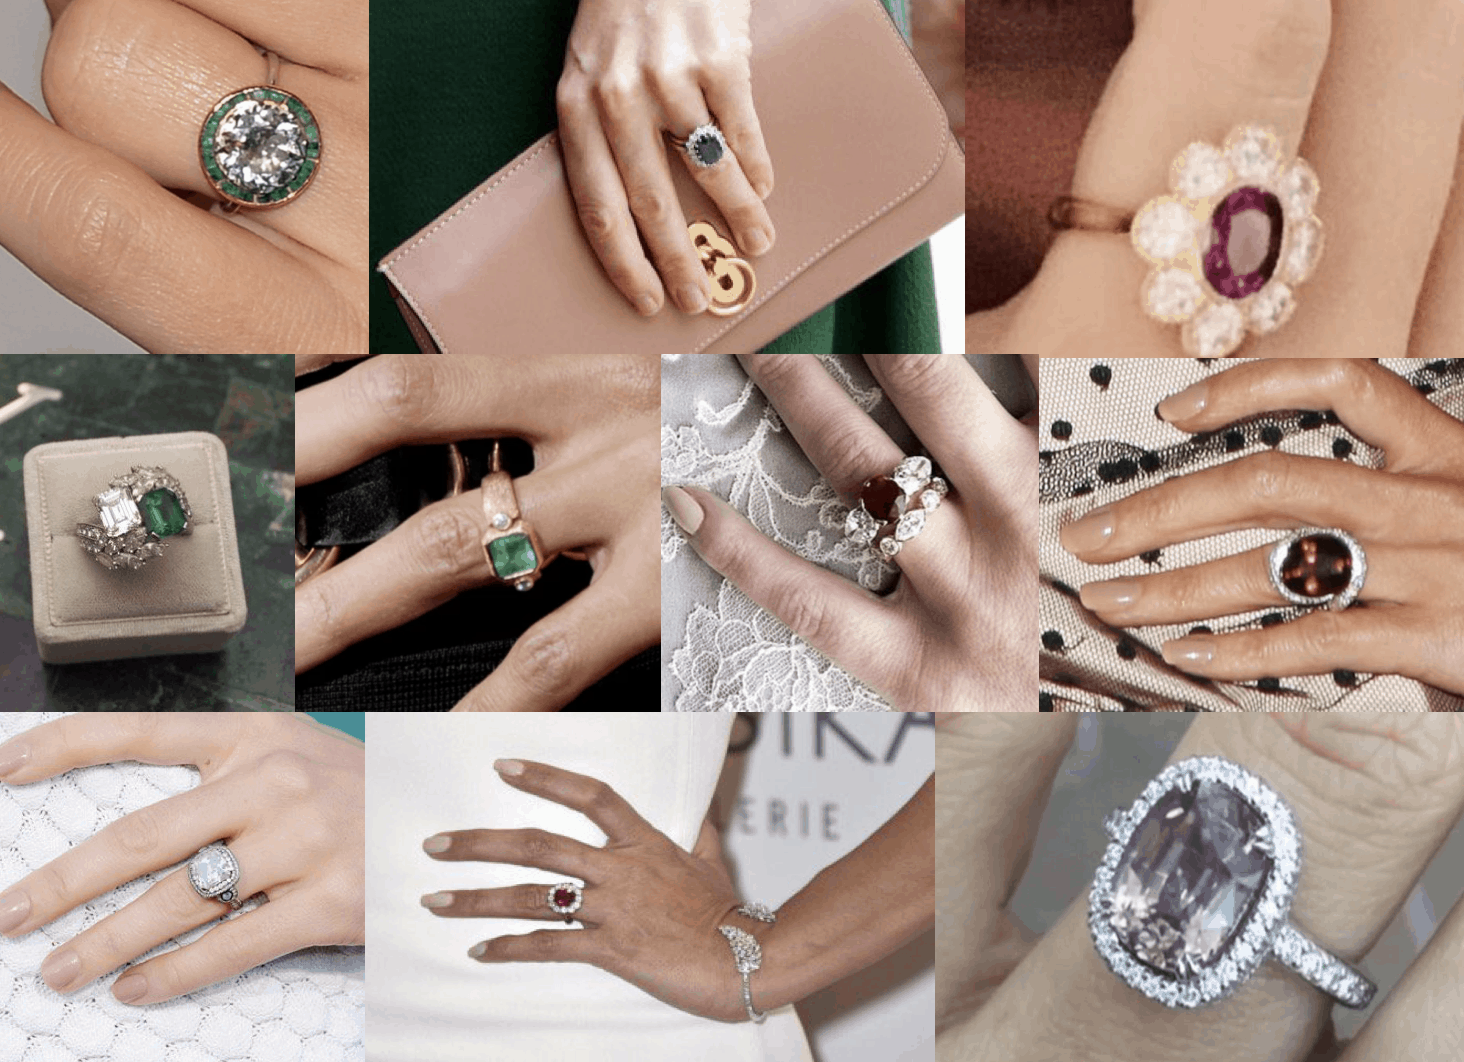 Diamond Flower Ring Flower Engagement Ring Women Statement -   Flower  diamond engagement ring, Flower engagement ring, Unique diamond engagement  rings